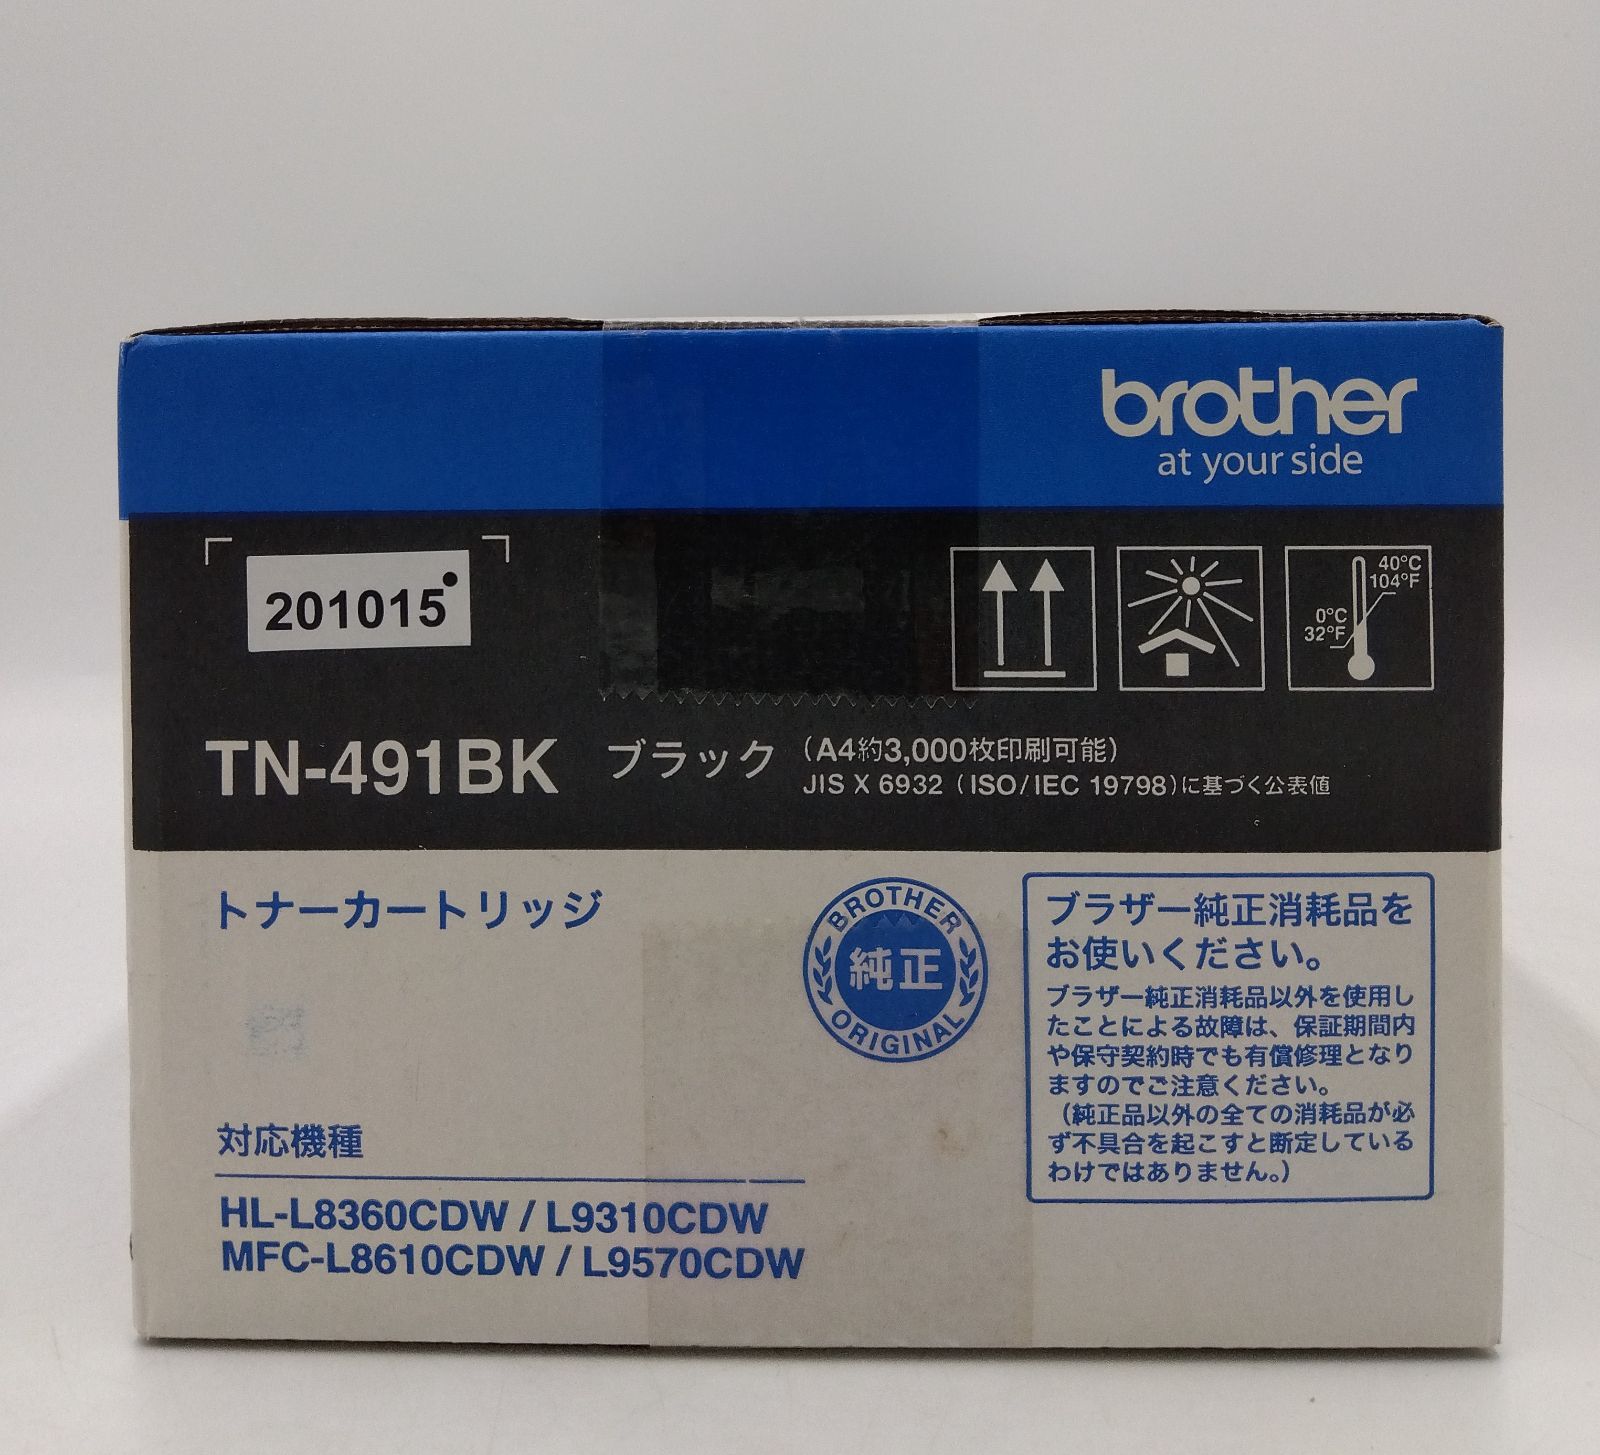 高額品送料無料 【純正品】BROTHER ブラザー トナーカートリッジ【TN-491BK ブラック】 (代引不可) プリンター・FAX用インク 